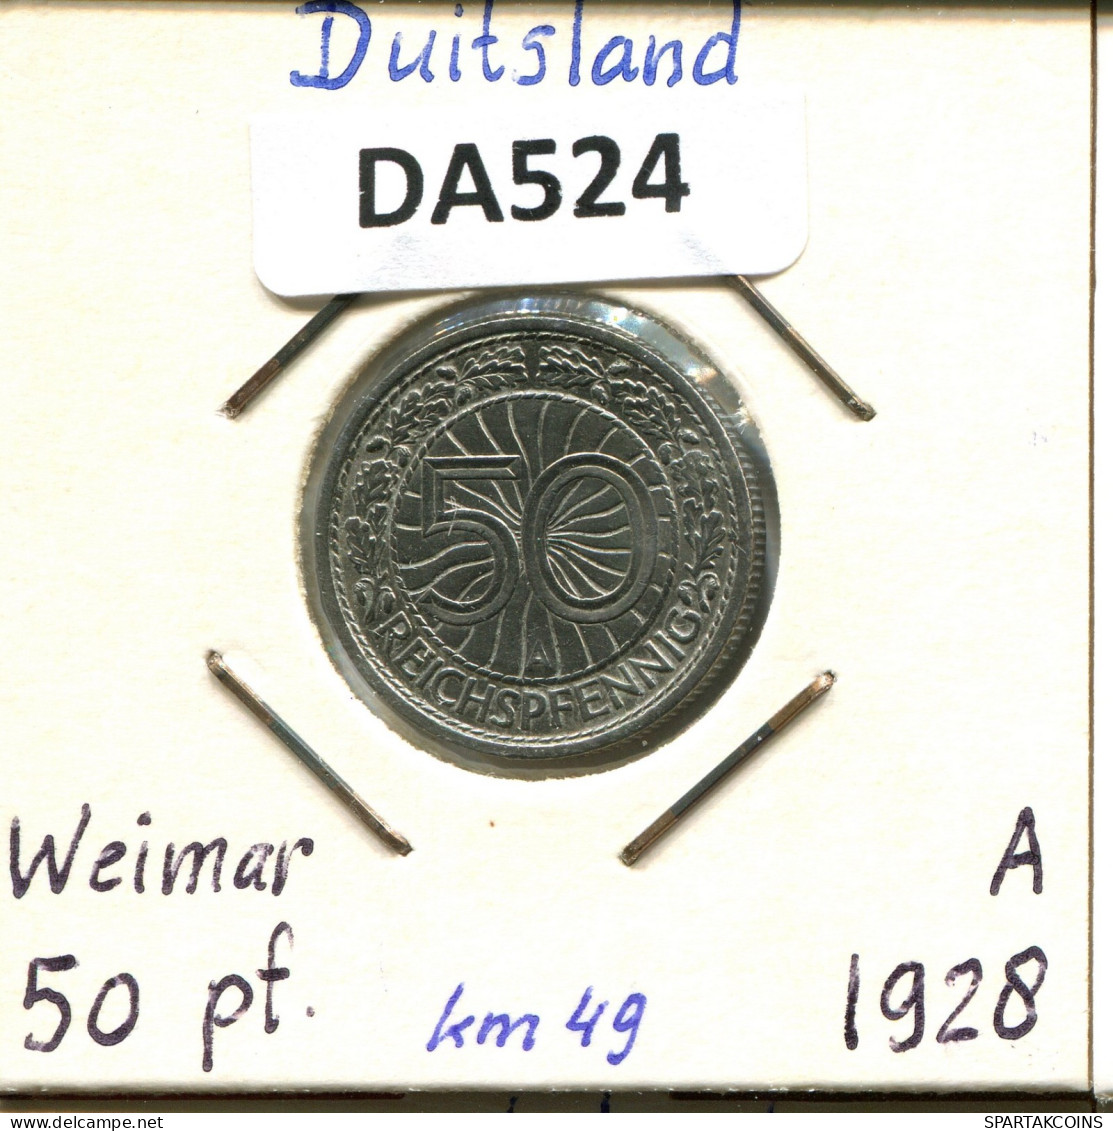 50 REICHSPFENNIG 1928 A DEUTSCHLAND Münze GERMANY #DA524.2.D.A - 50 Renten- & 50 Reichspfennig